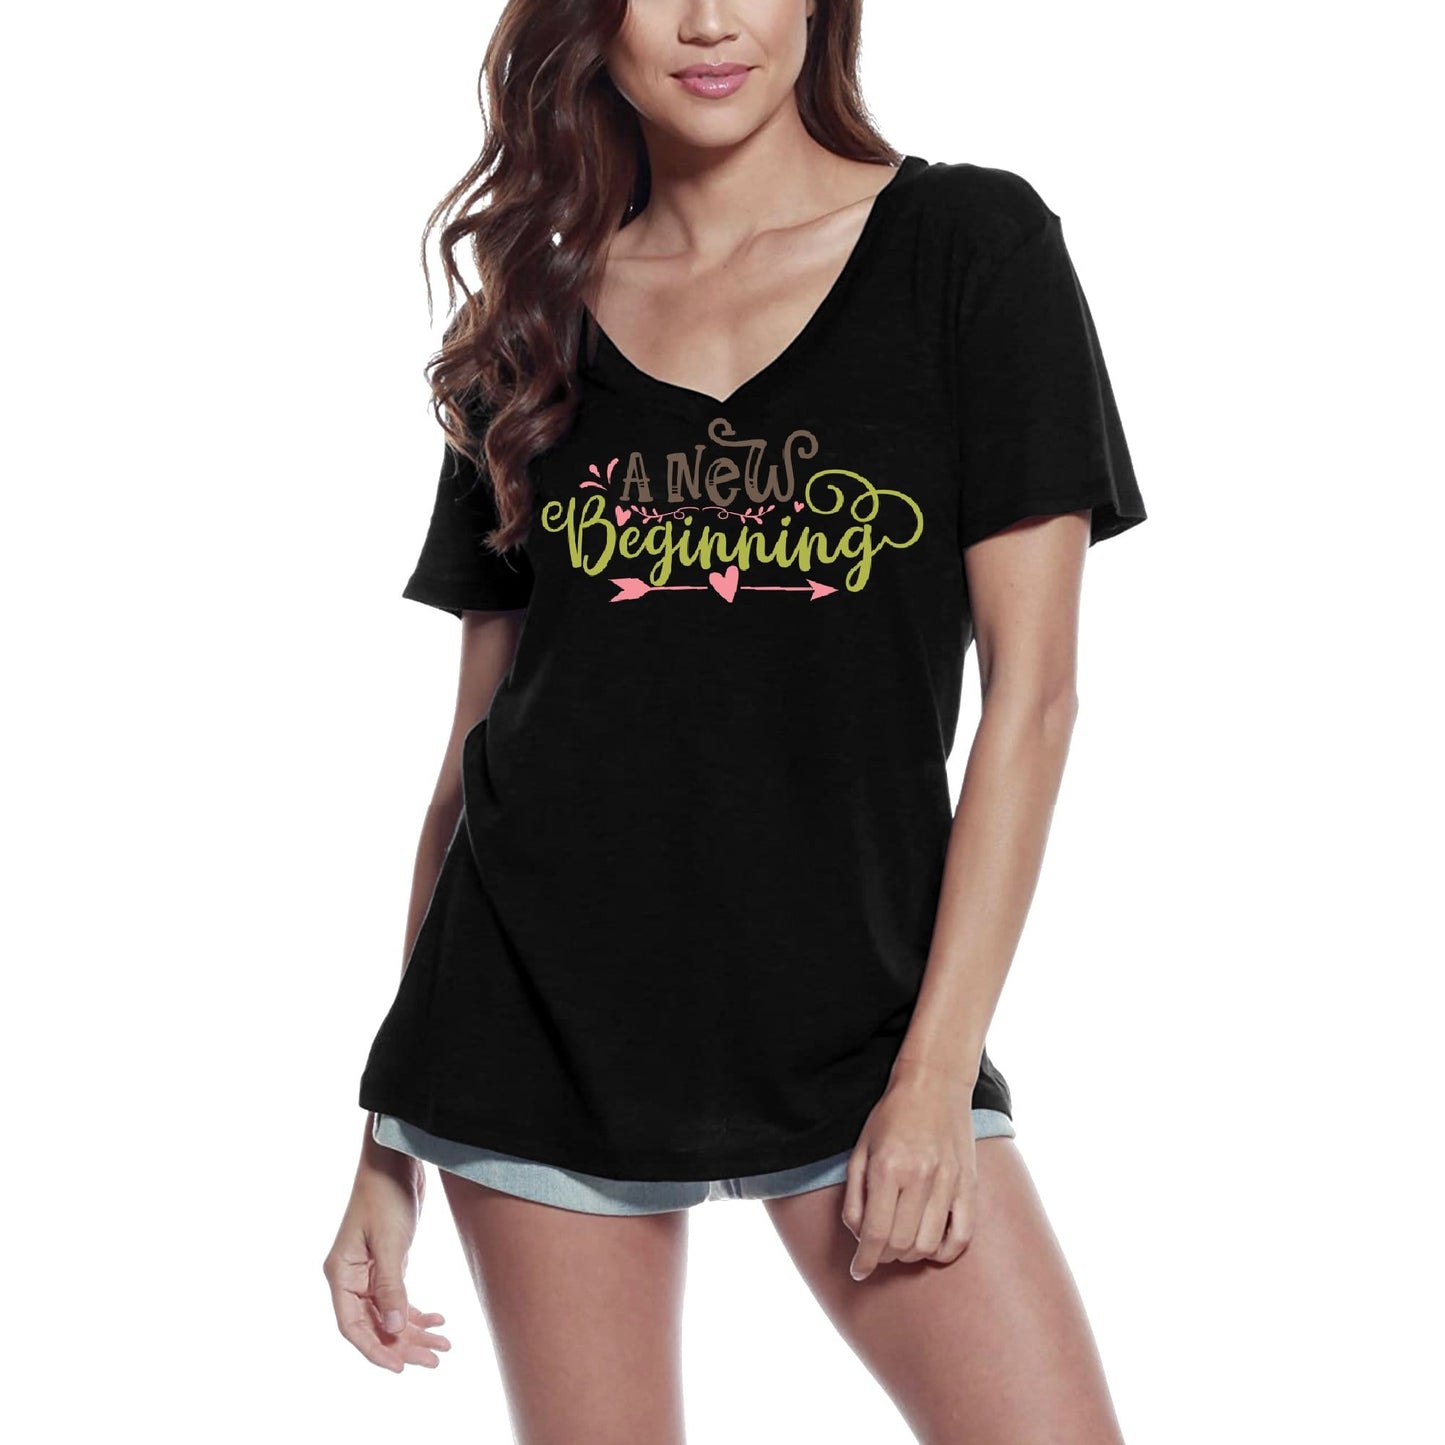 ULTRABASIC Women's T-Shirt A New Beginning - Heart Arrow Quote Tee Shirt Tops